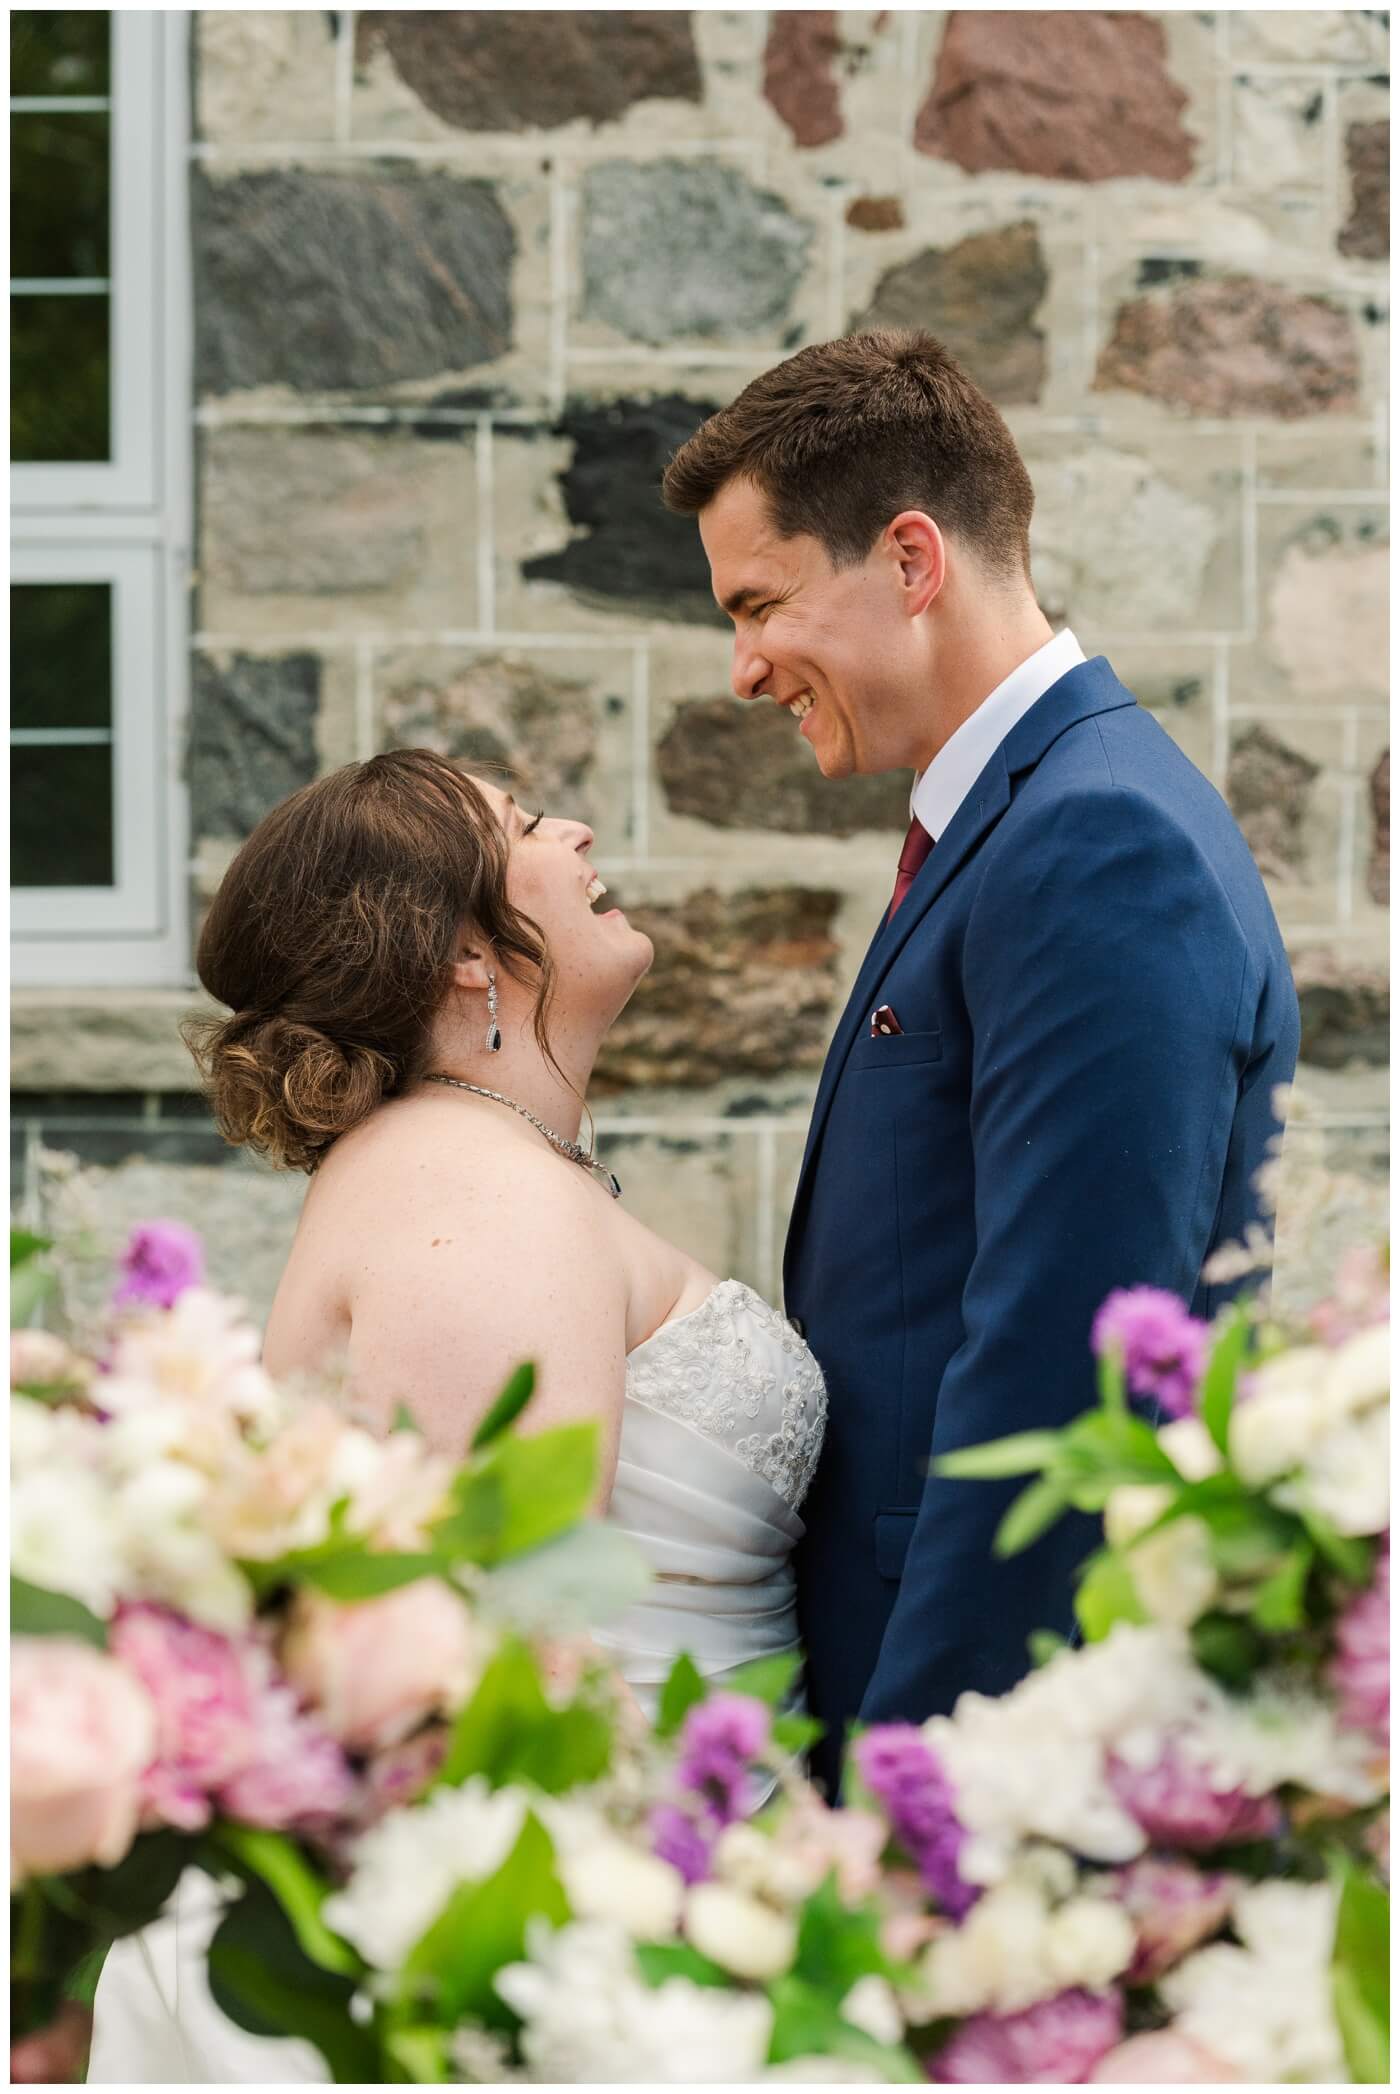 Ben & Megan - 23 - Regina Wedding - Bride & groom through the flowers